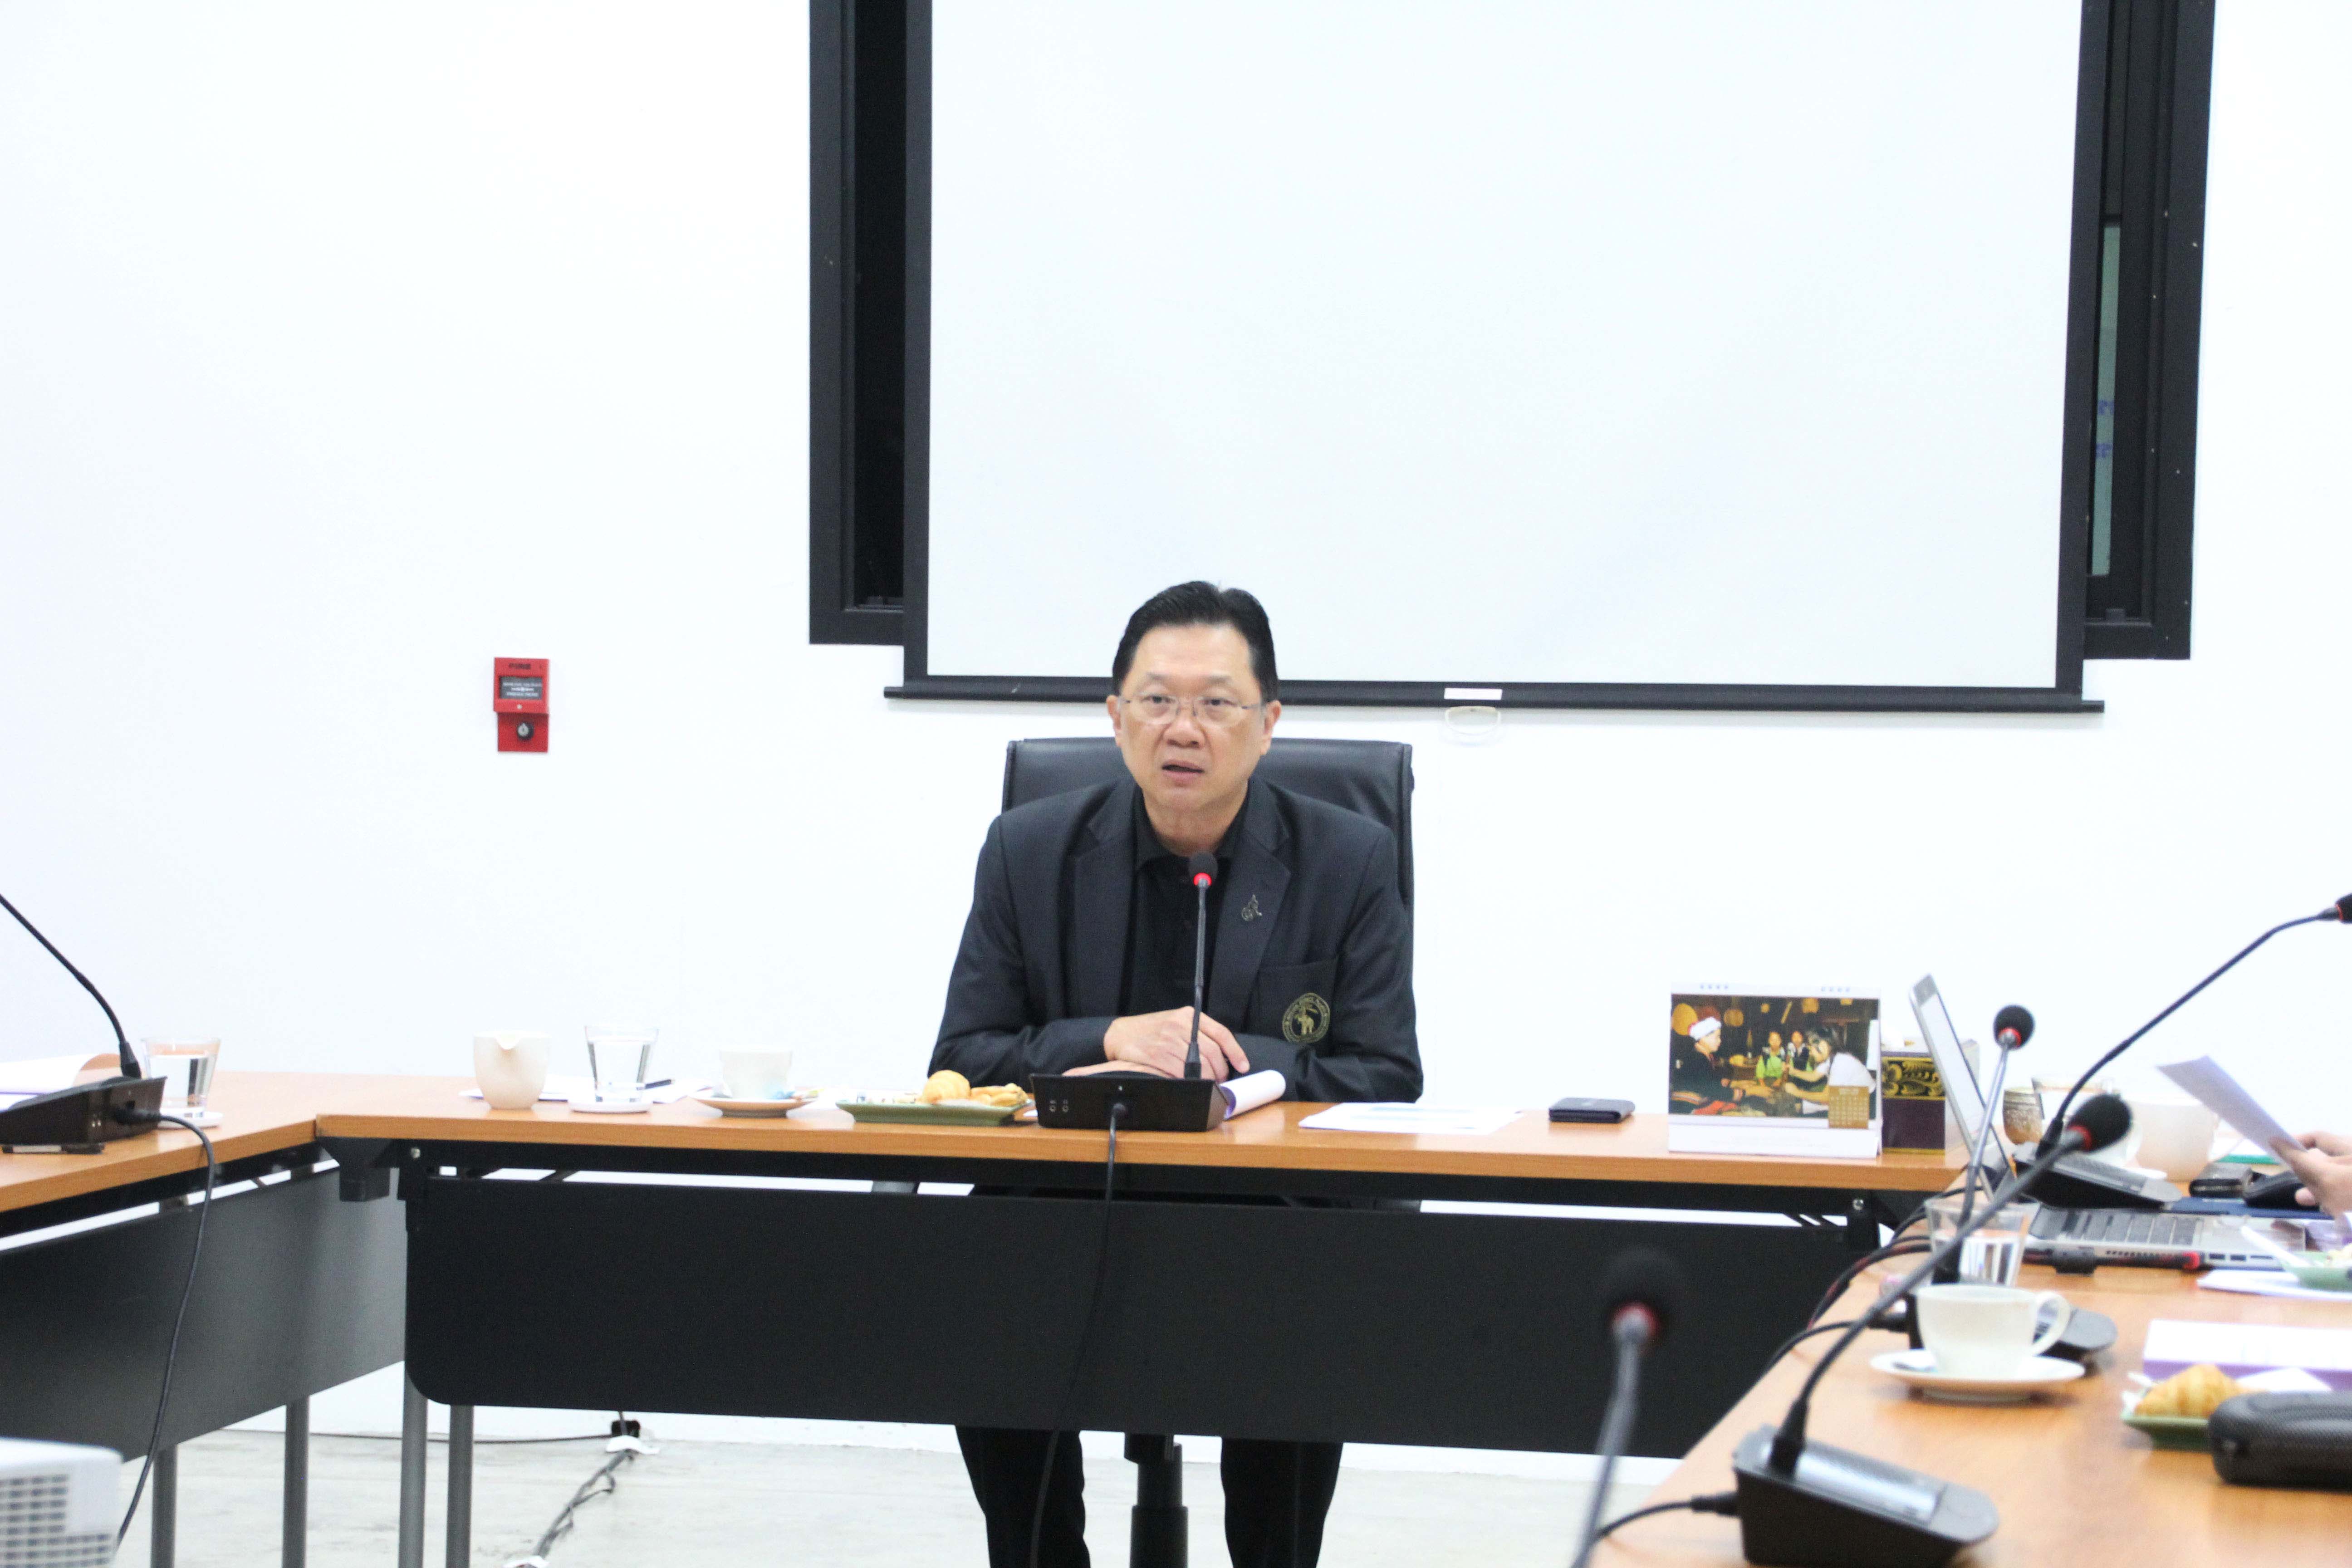 การประชุมคณะกรรมการอำนวยการประจำสำนักส่งเสริมศิลปวัฒนธรรม ครั้งที่ 1/2560